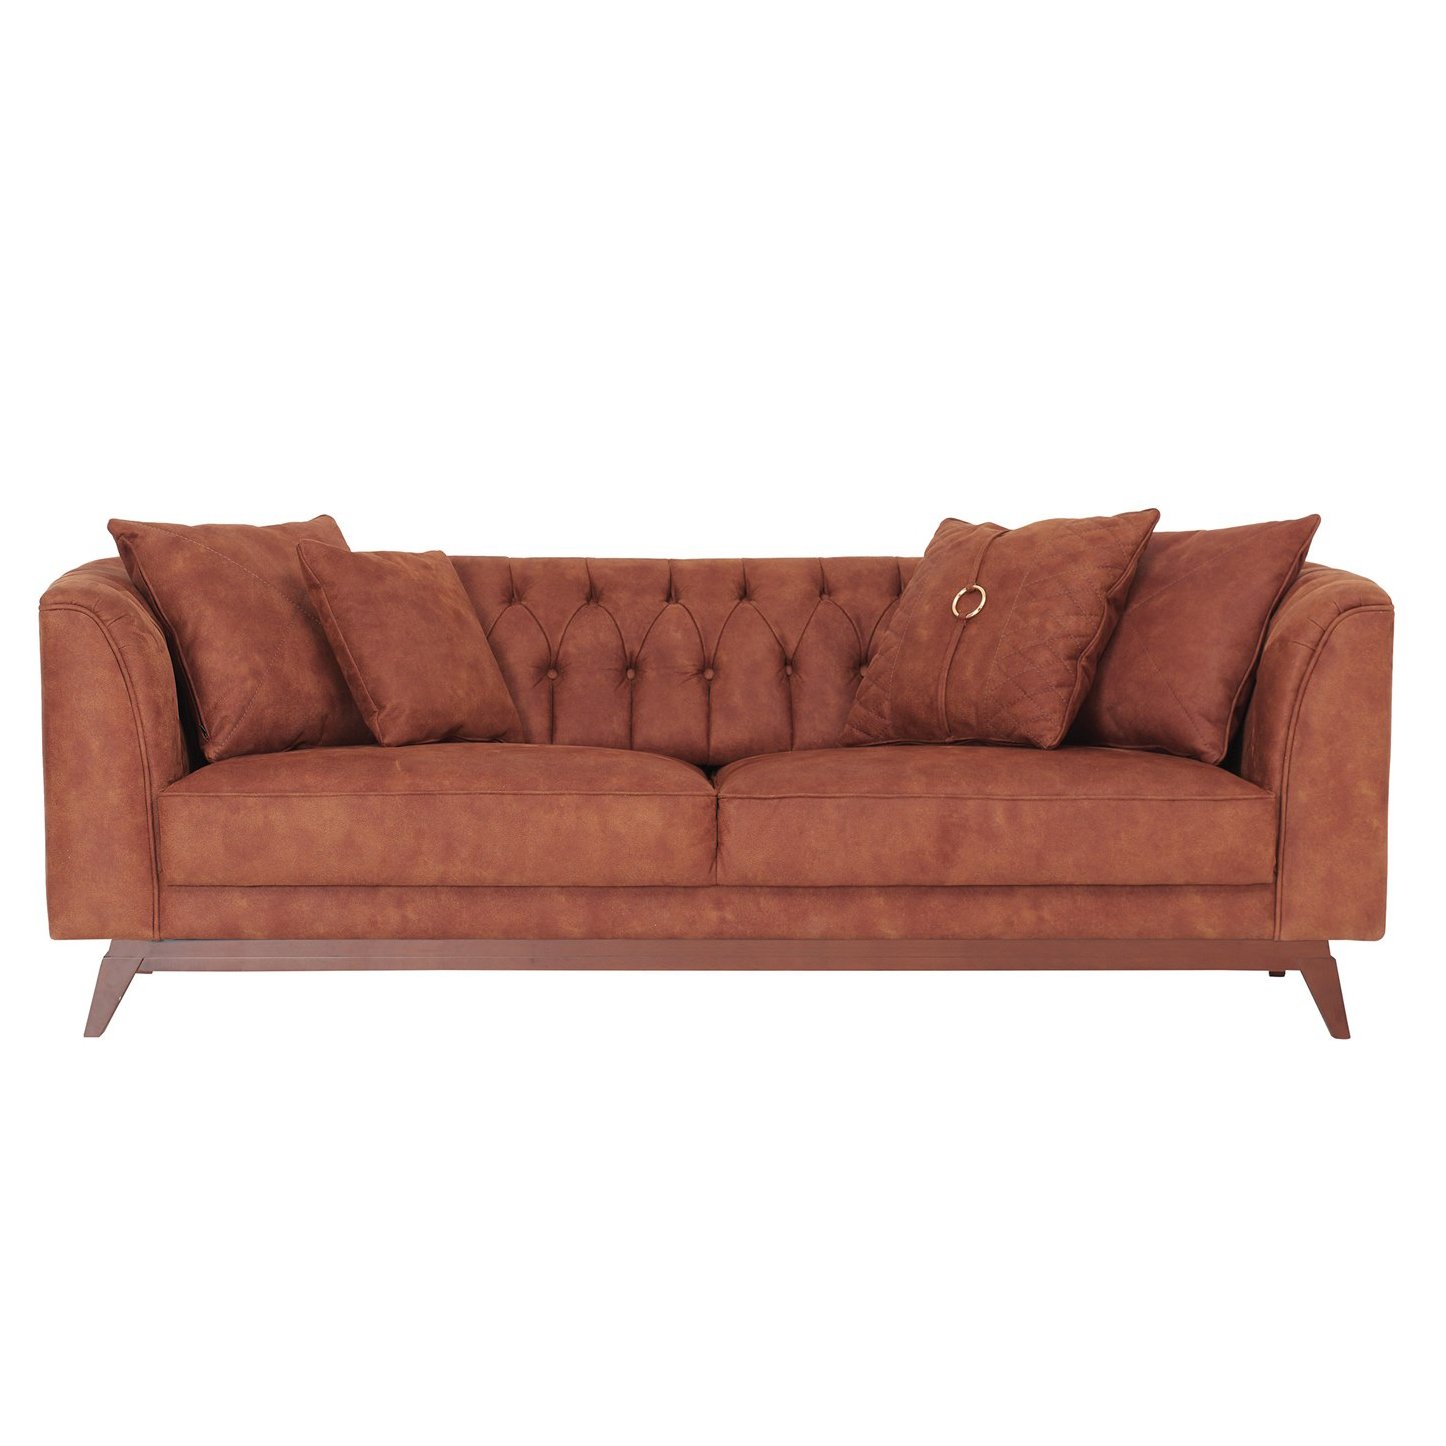 Диван-кровать Enza Home Elegante, трёхместный, цвет коричневый 308 (EH20002)EH20002